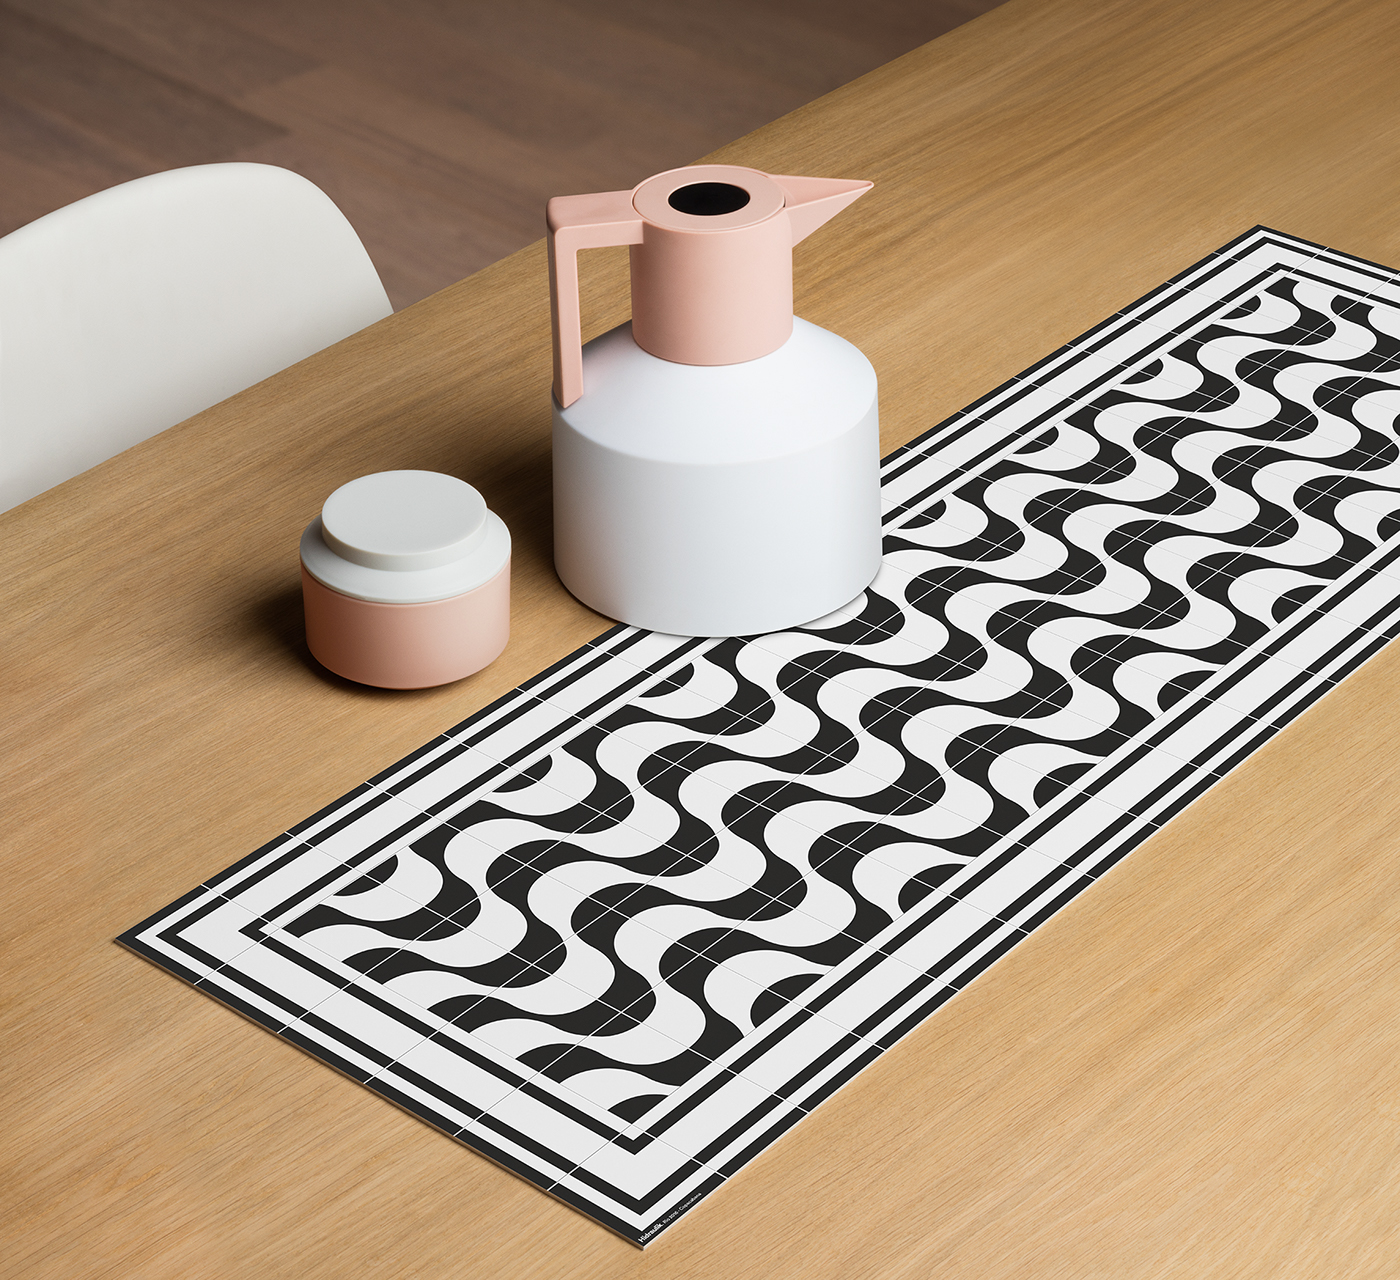 tiles carpet Tablecloth interiordesign design home decor